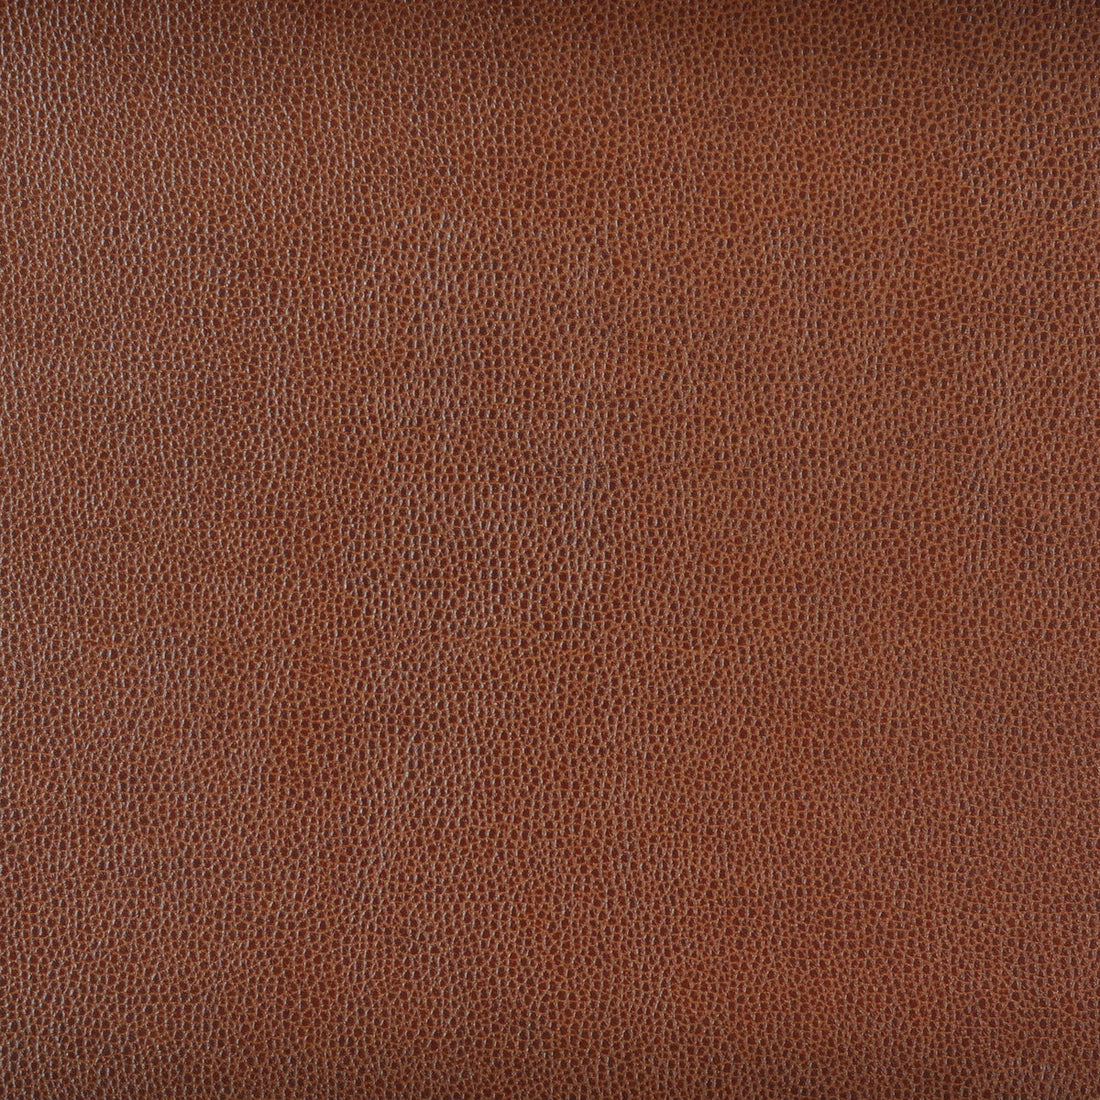 Kravet Design fabric in sparta-6 color - pattern SPARTA.6.0 - by Kravet Design